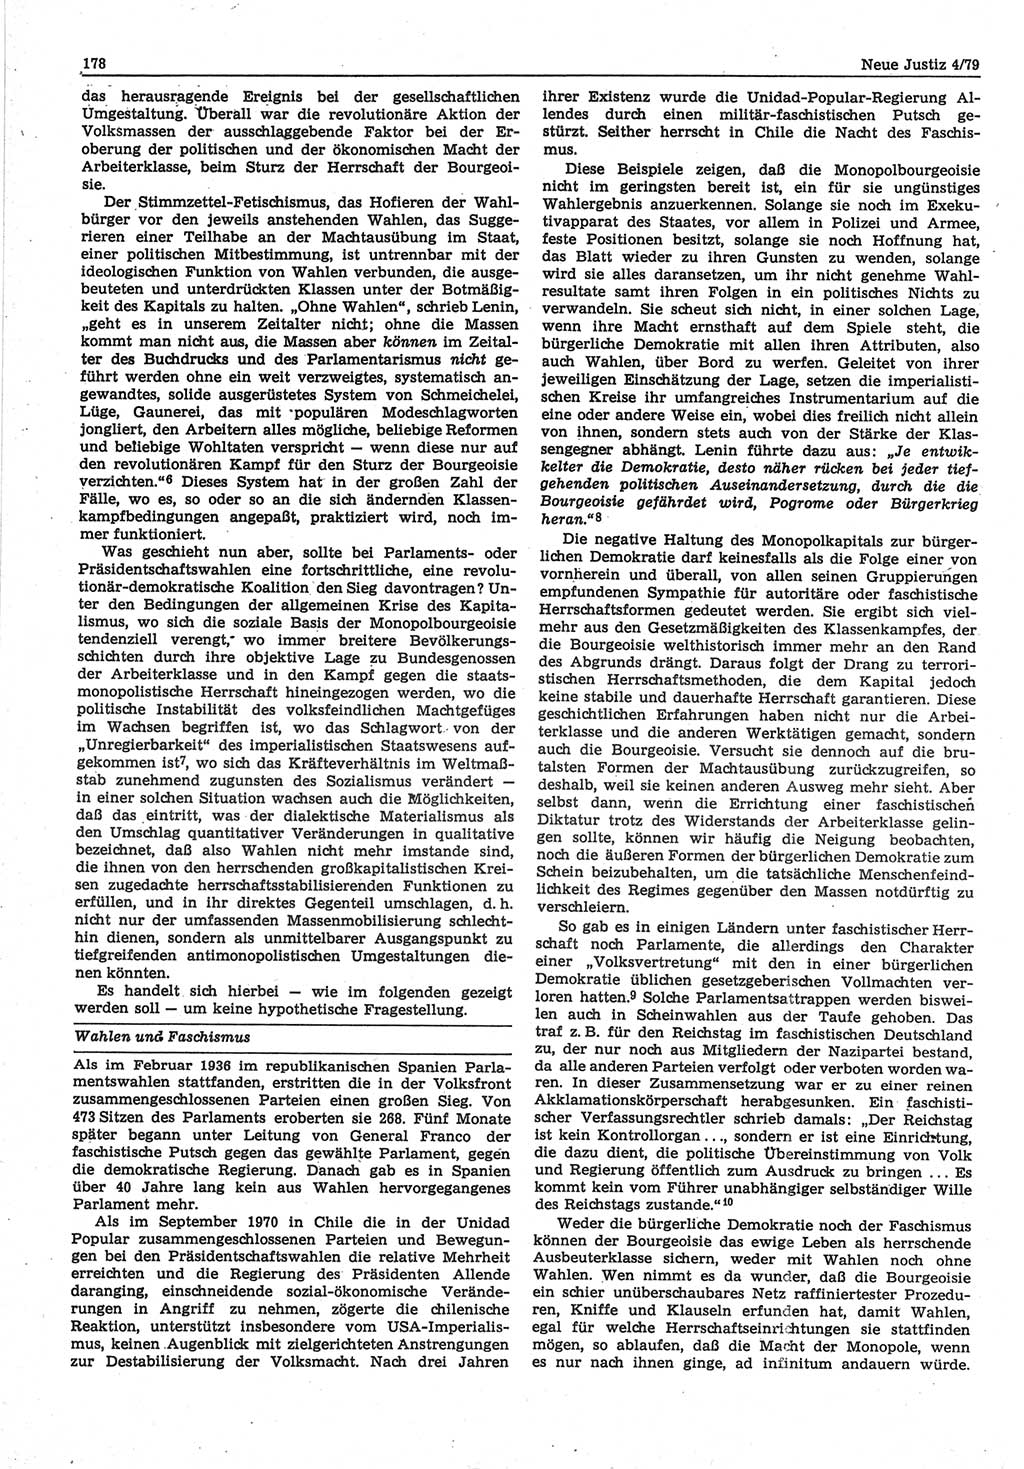 Neue Justiz (NJ), Zeitschrift für sozialistisches Recht und Gesetzlichkeit [Deutsche Demokratische Republik (DDR)], 33. Jahrgang 1979, Seite 178 (NJ DDR 1979, S. 178)